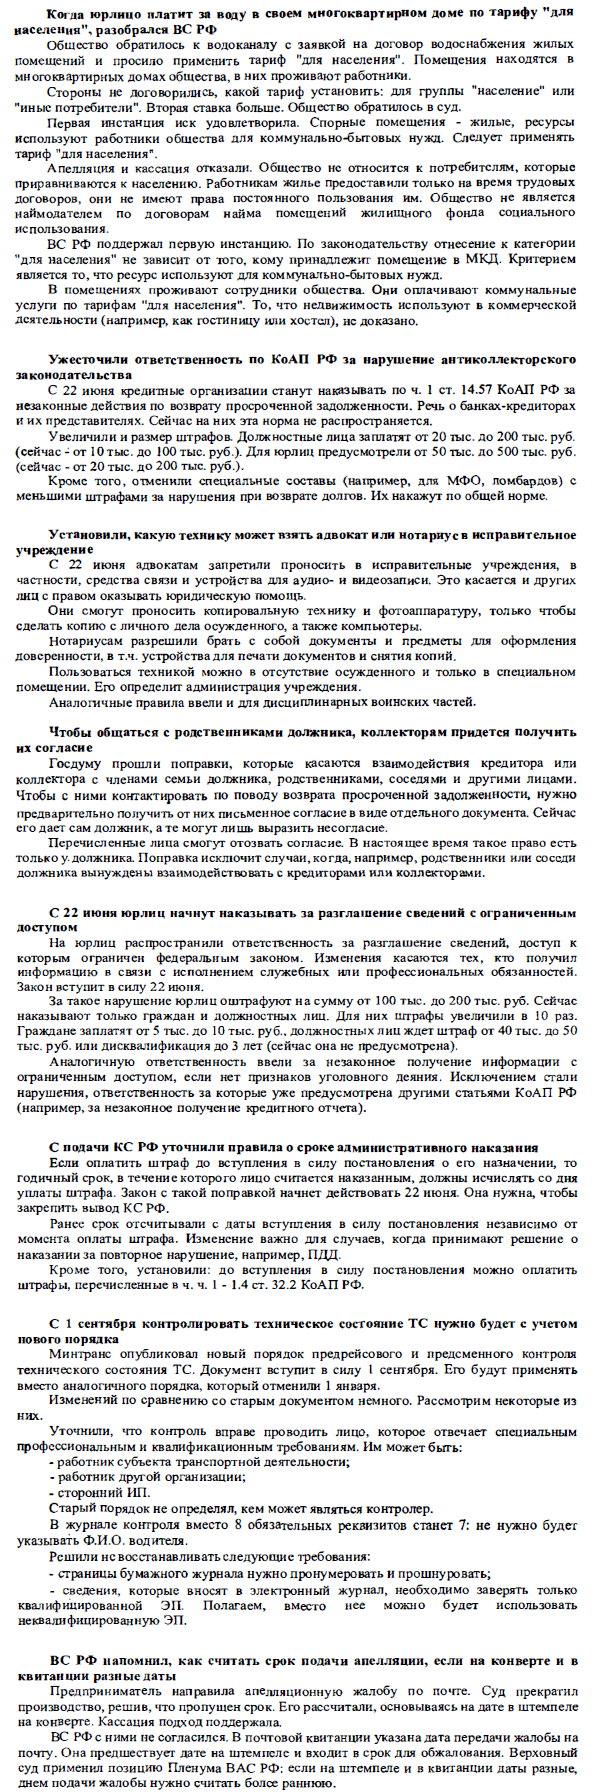 Реферат по теме Об украинских непрямых методах определения налогового обязательства